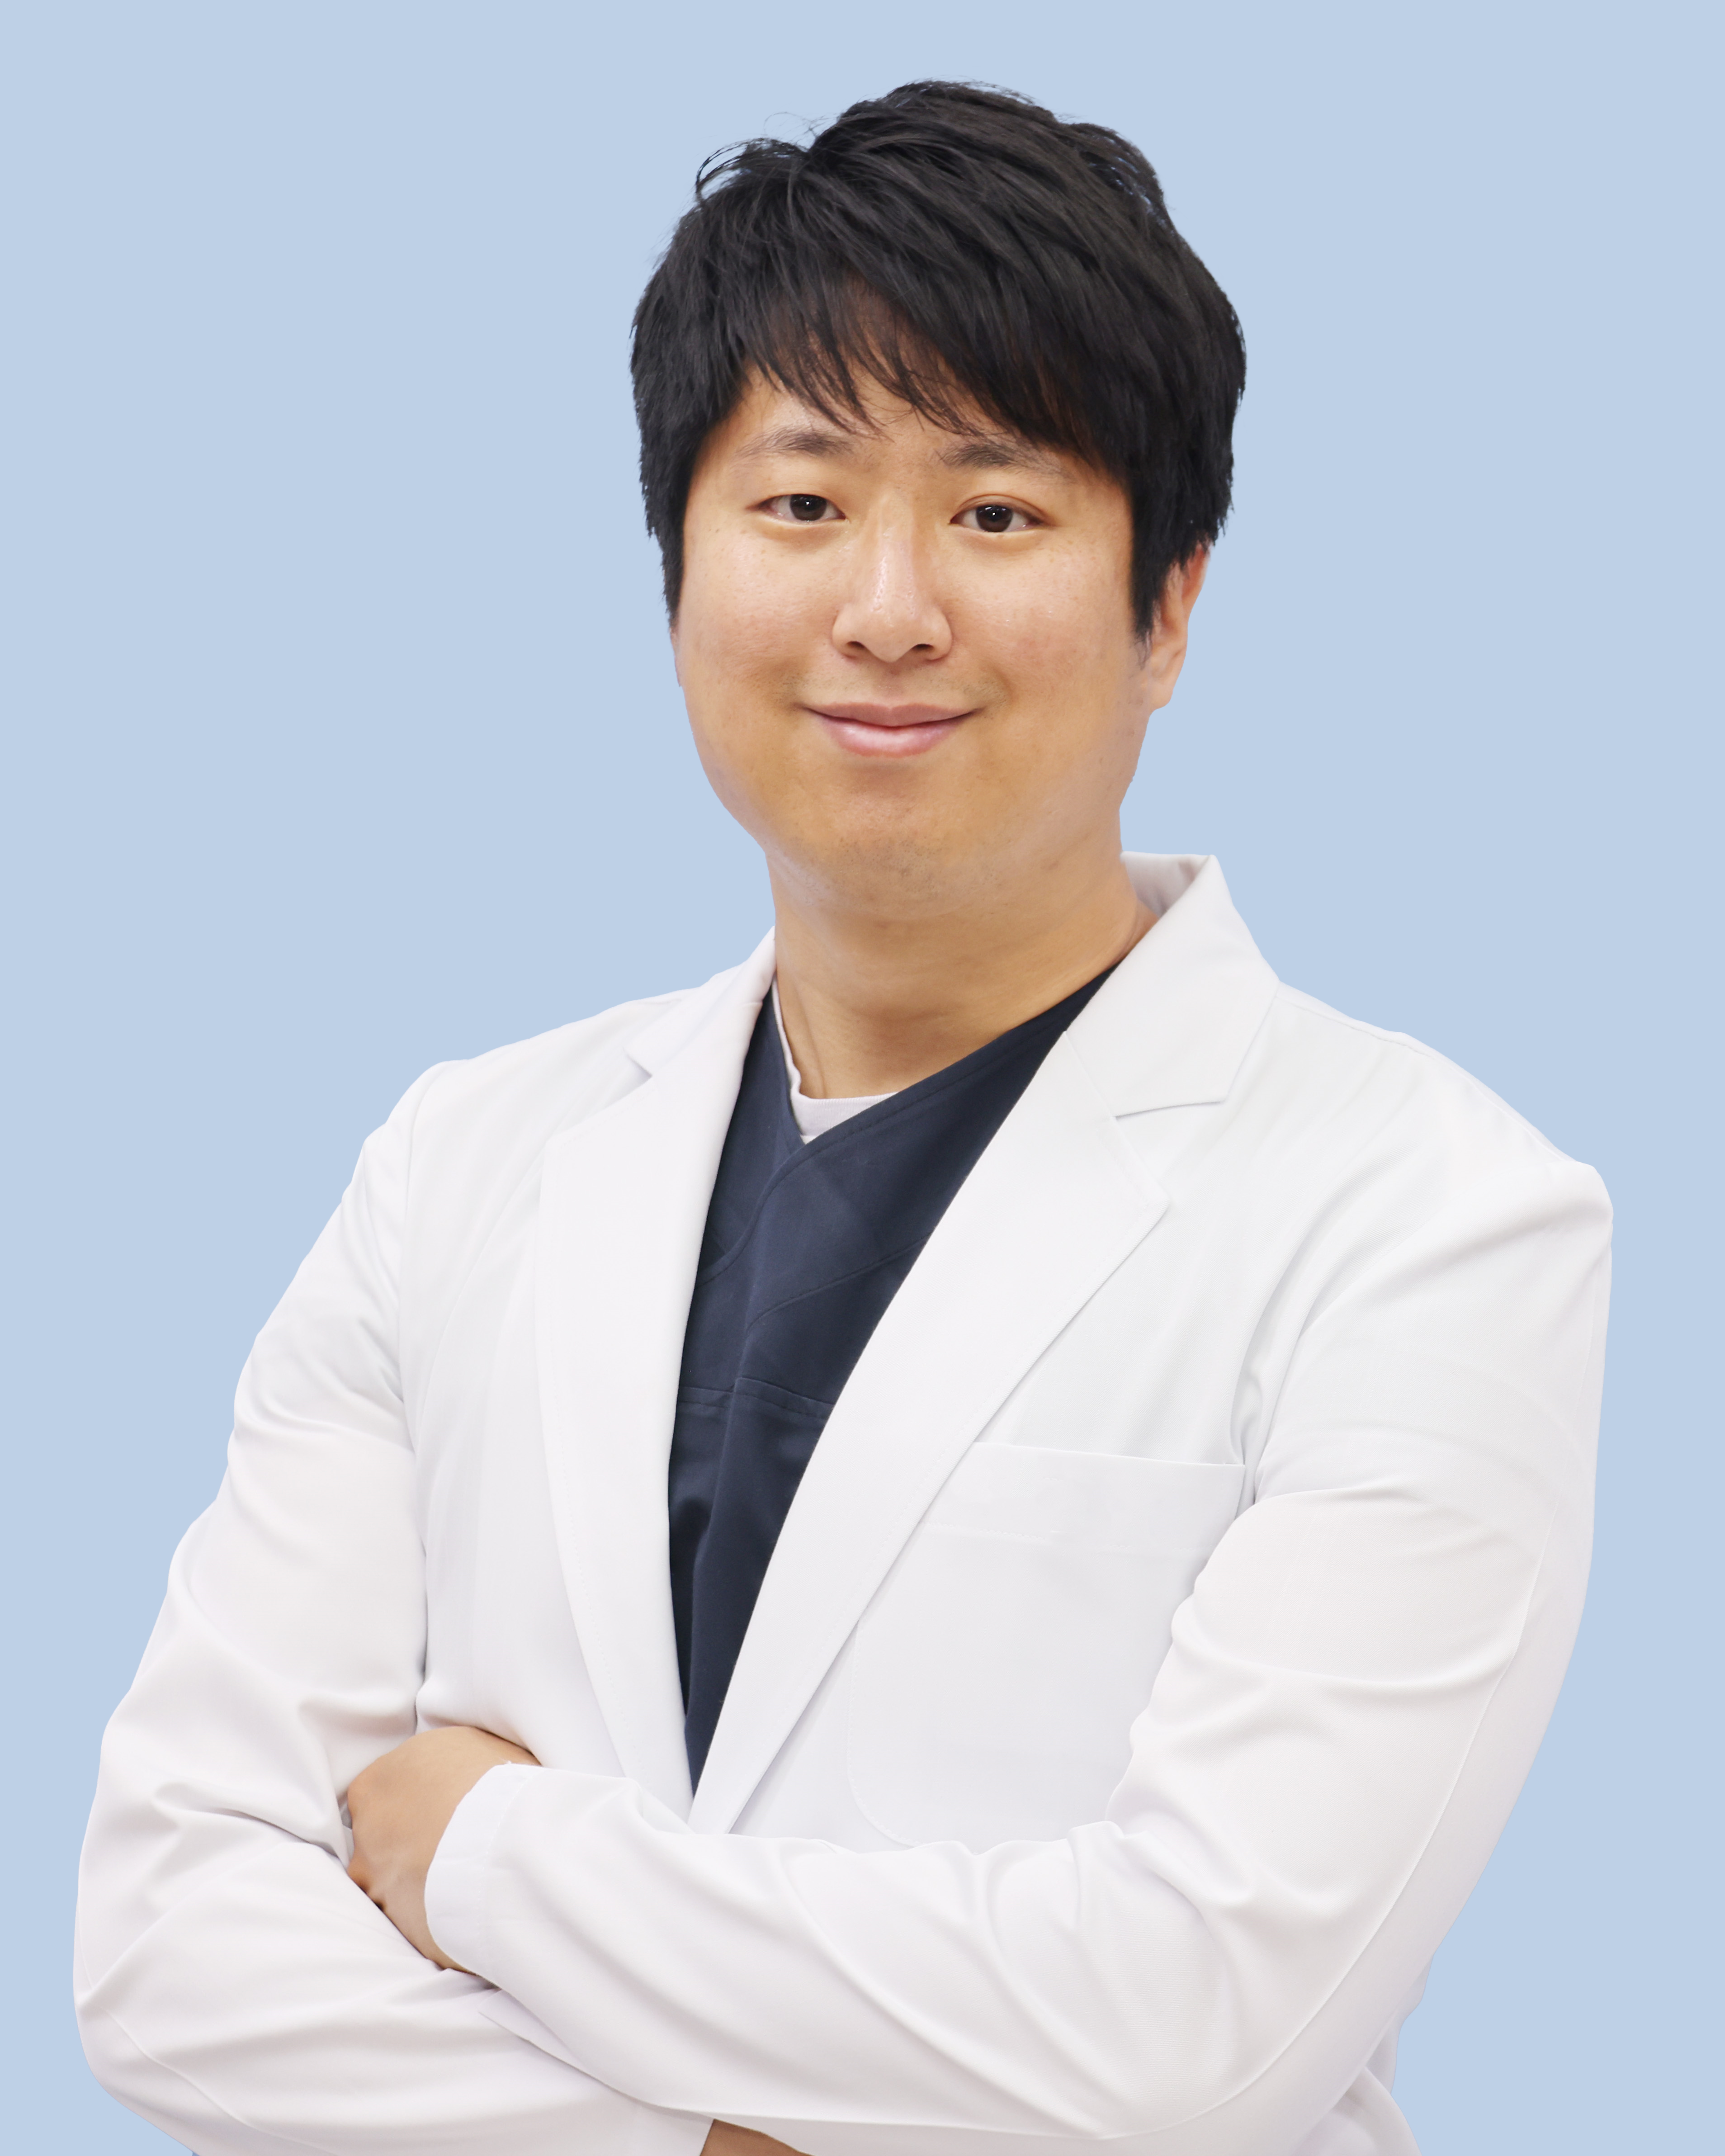 김창영 교수 프로필